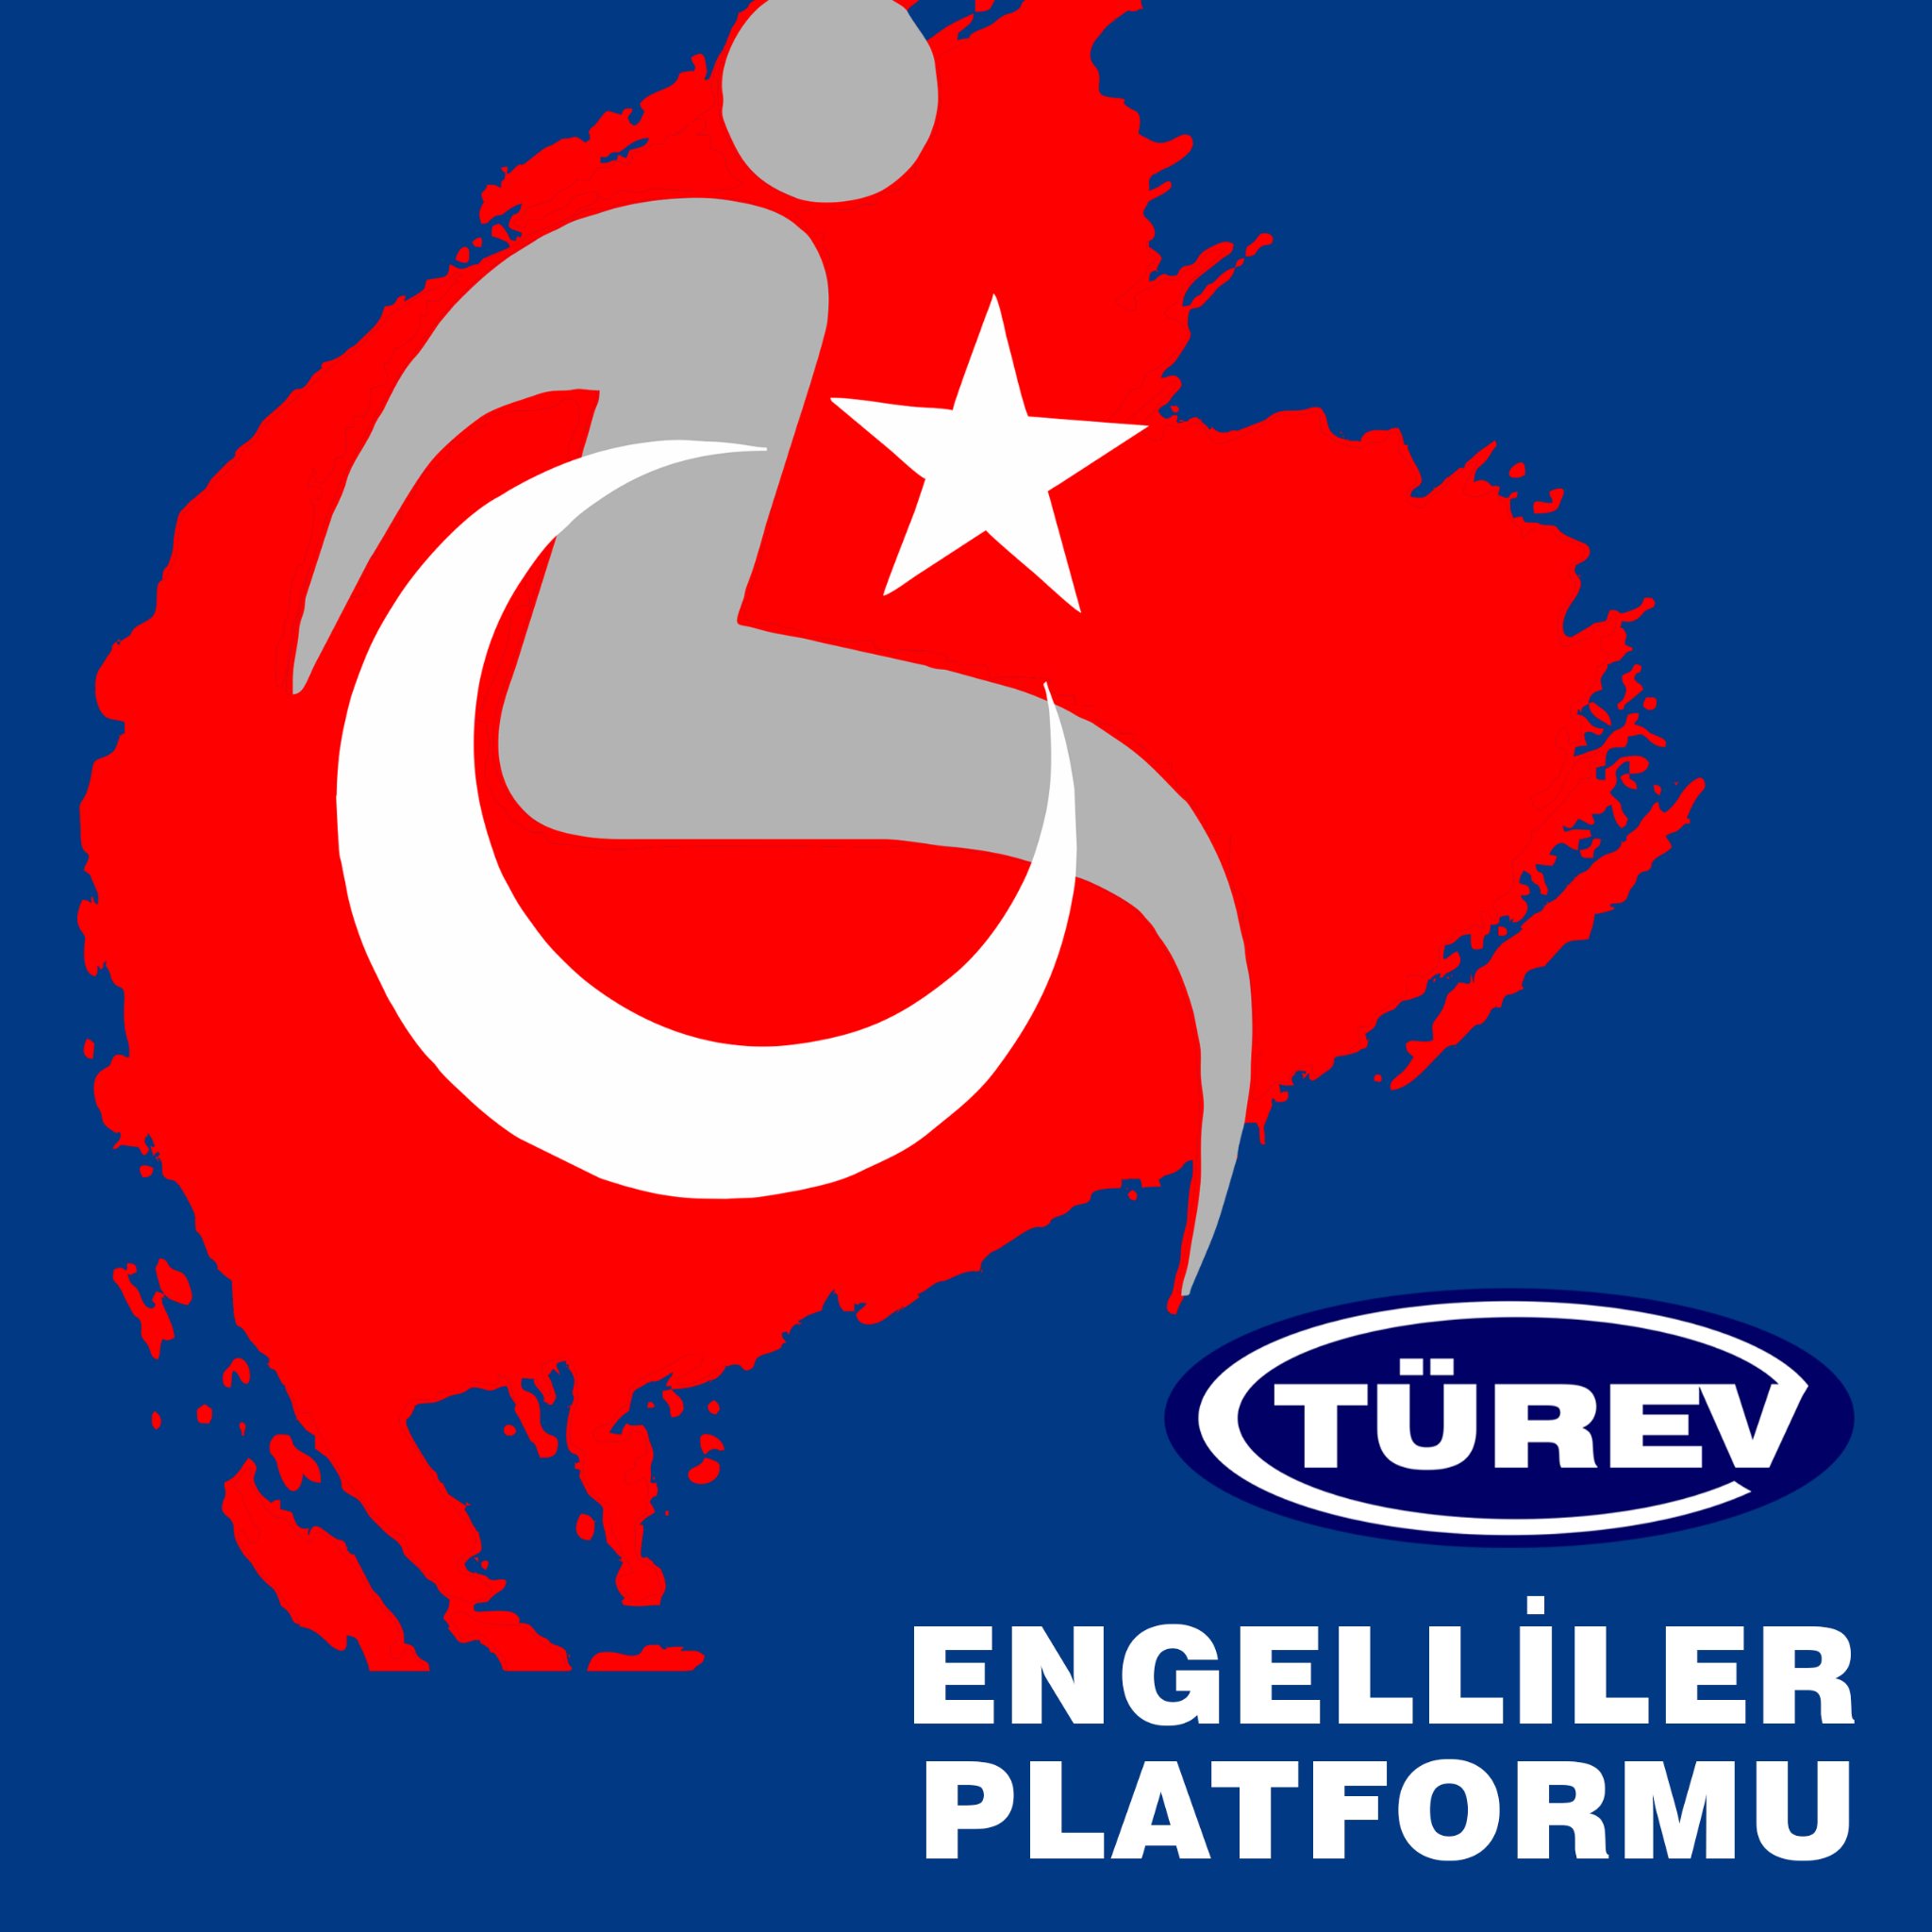 TUREV Engelliler Platformu